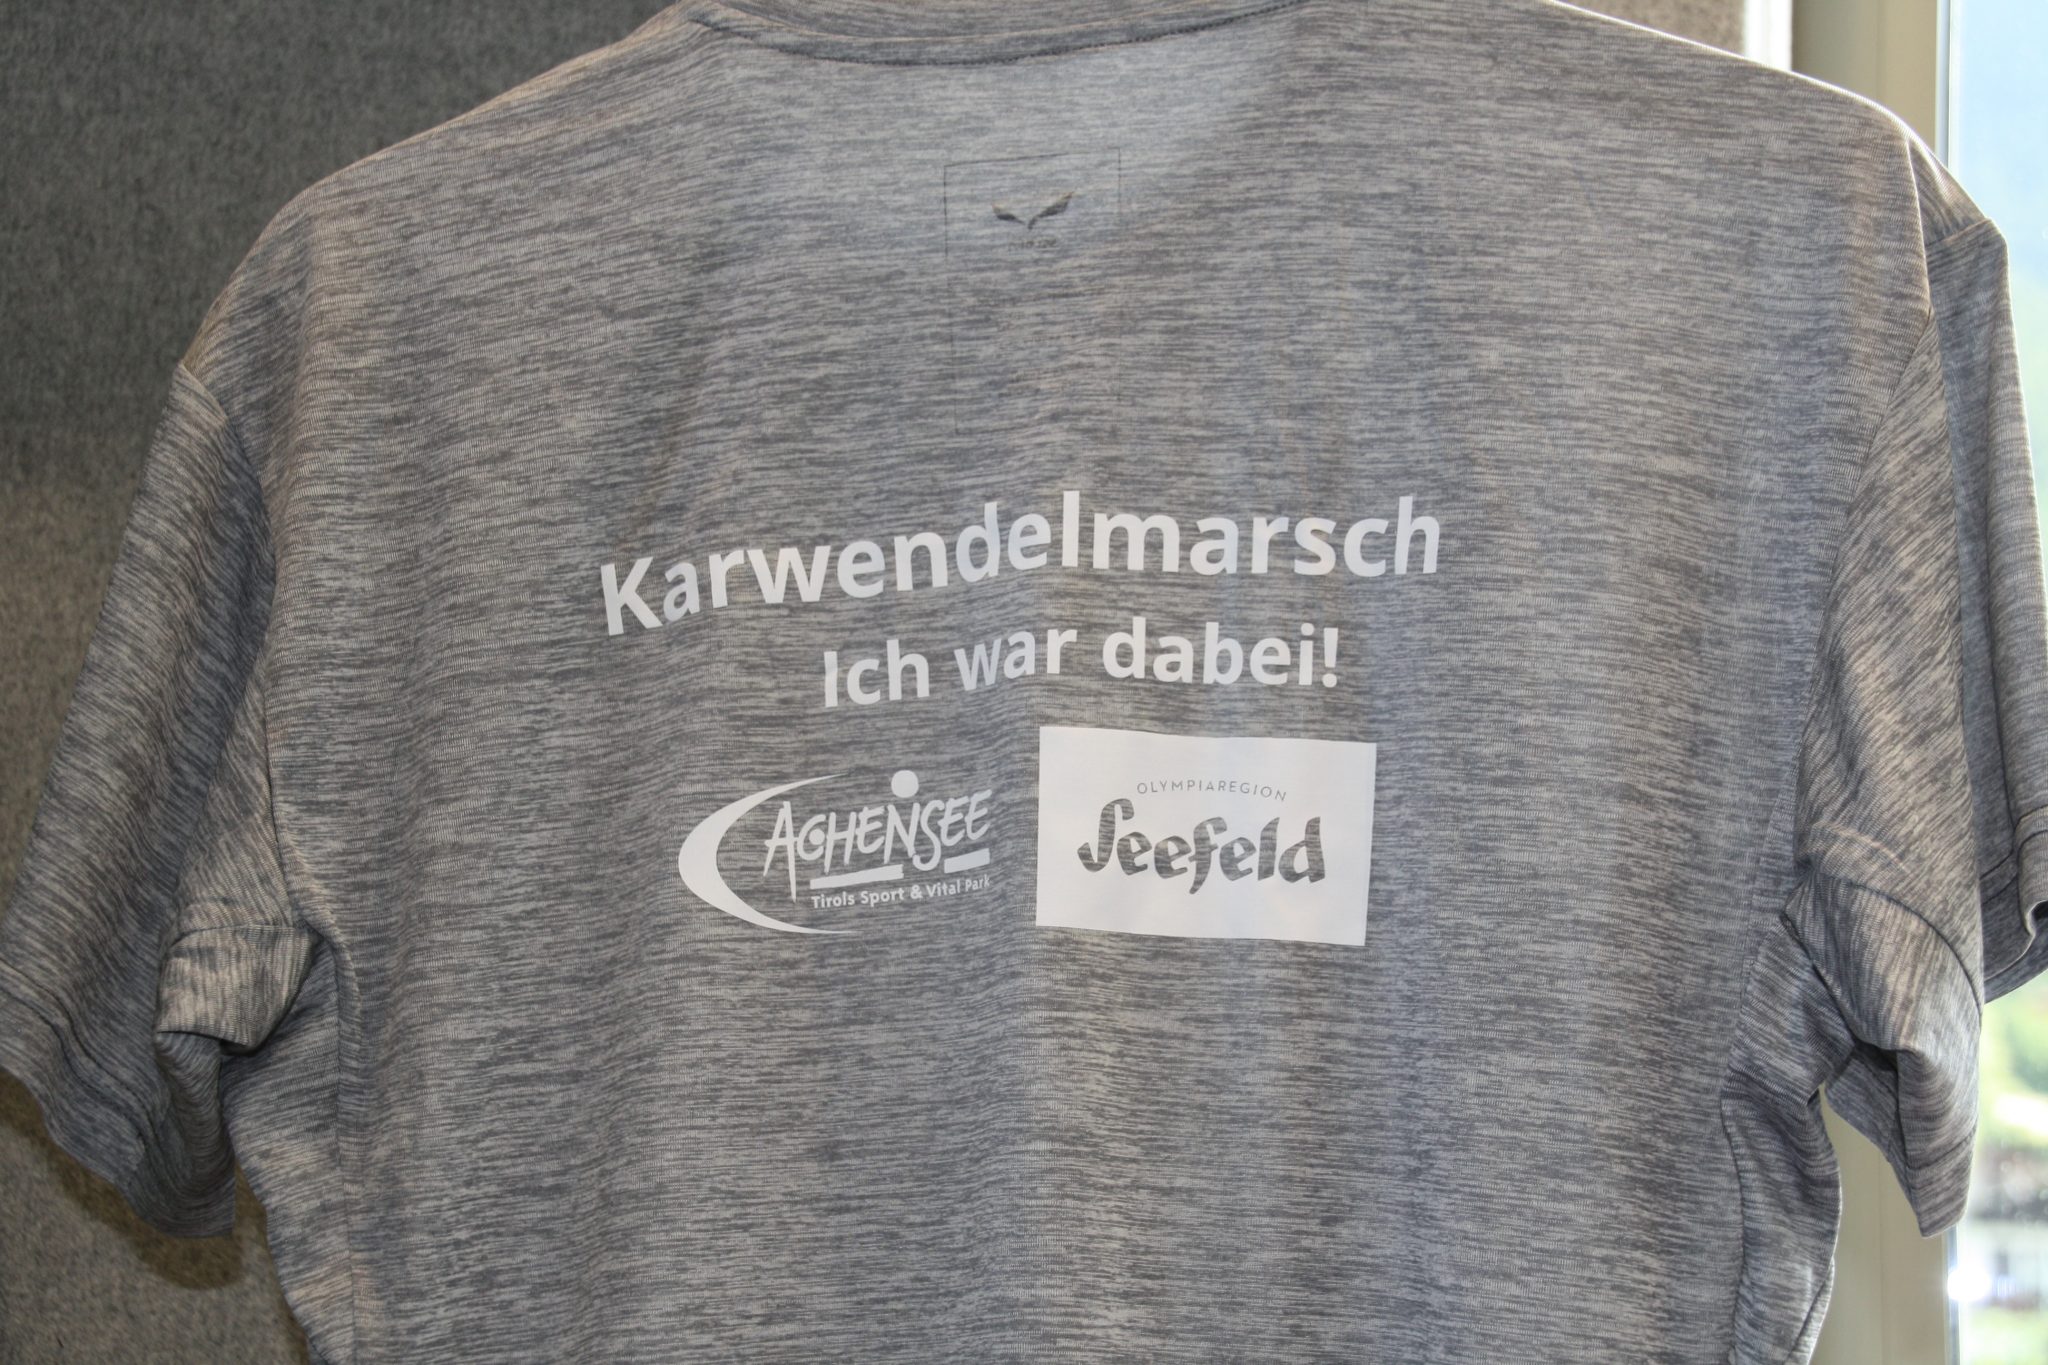 Salewa – „Ich war dabei“ Karwendelmarsch T-Shirt (Männer) in S